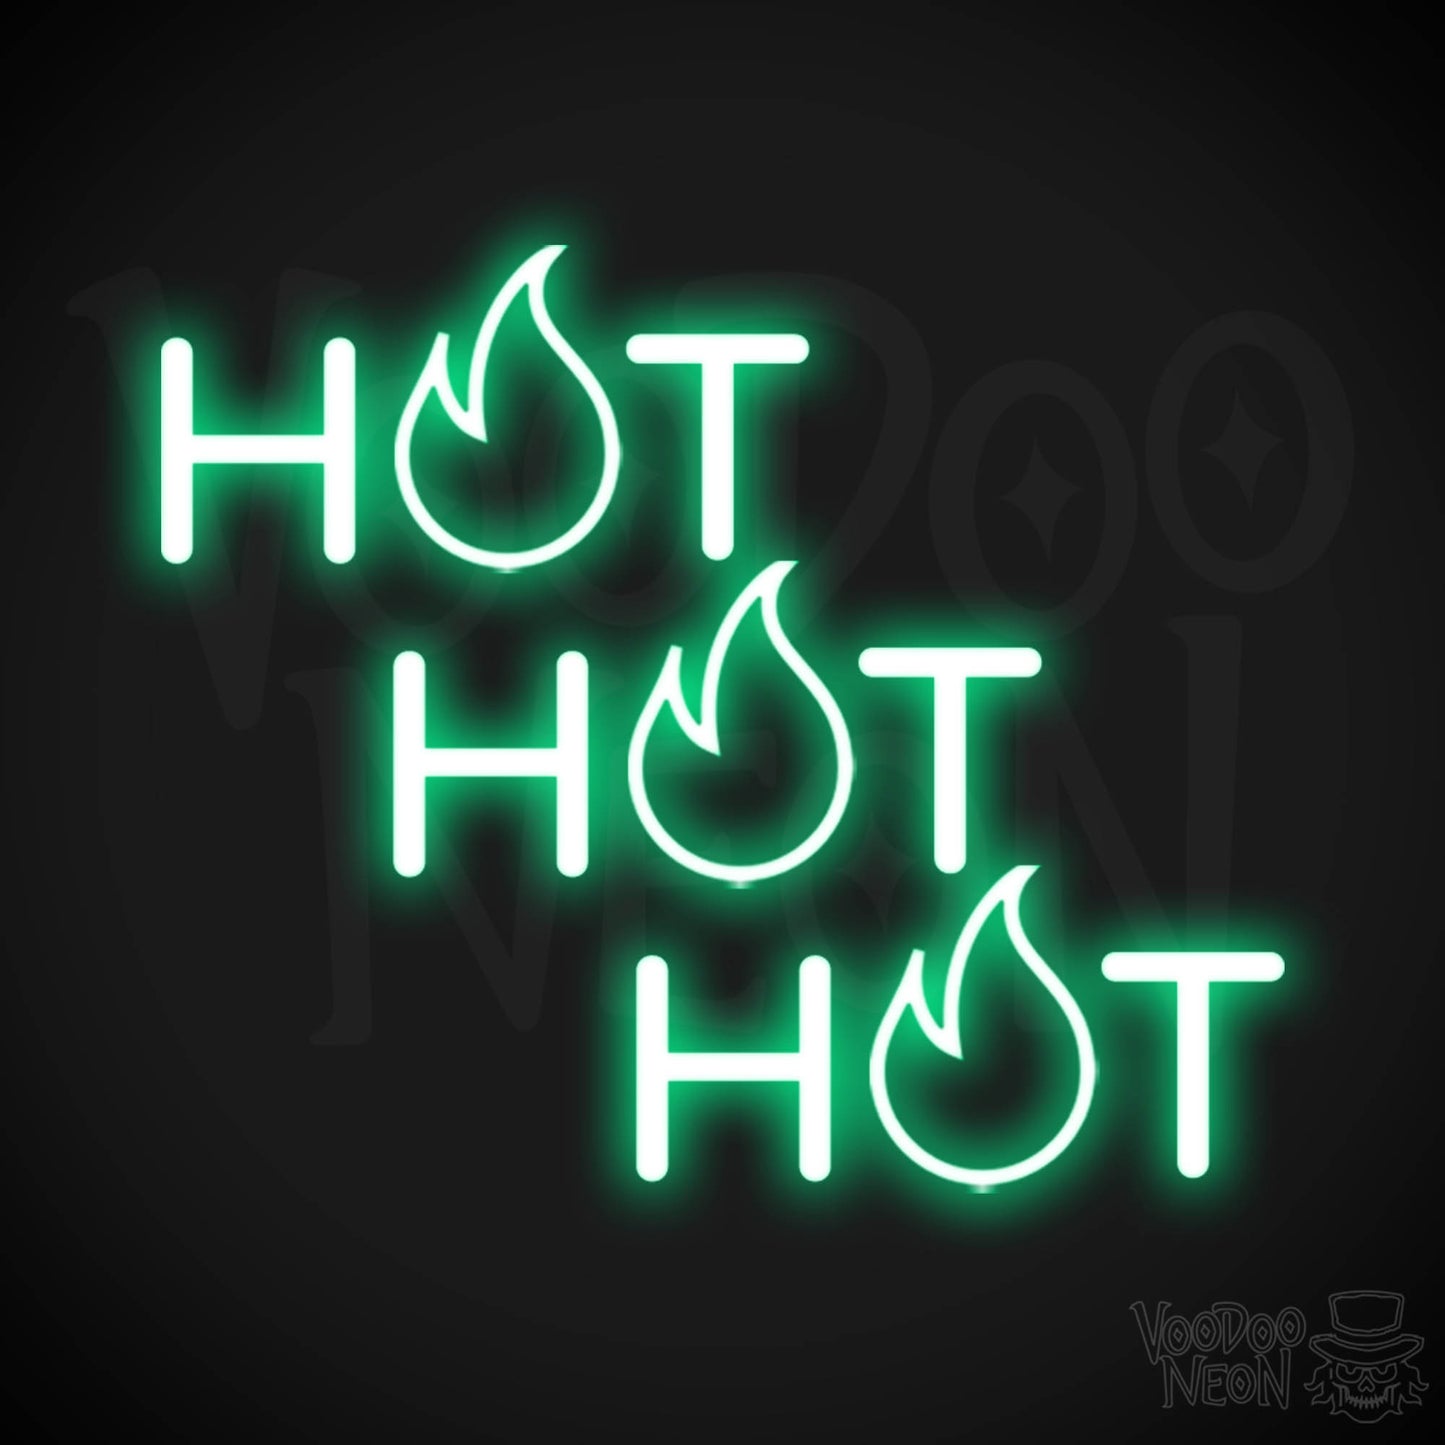 Hot Hot Hot Neon Sign - Neon Hot Hot Hot Sign - LED Wall Art - Color Green